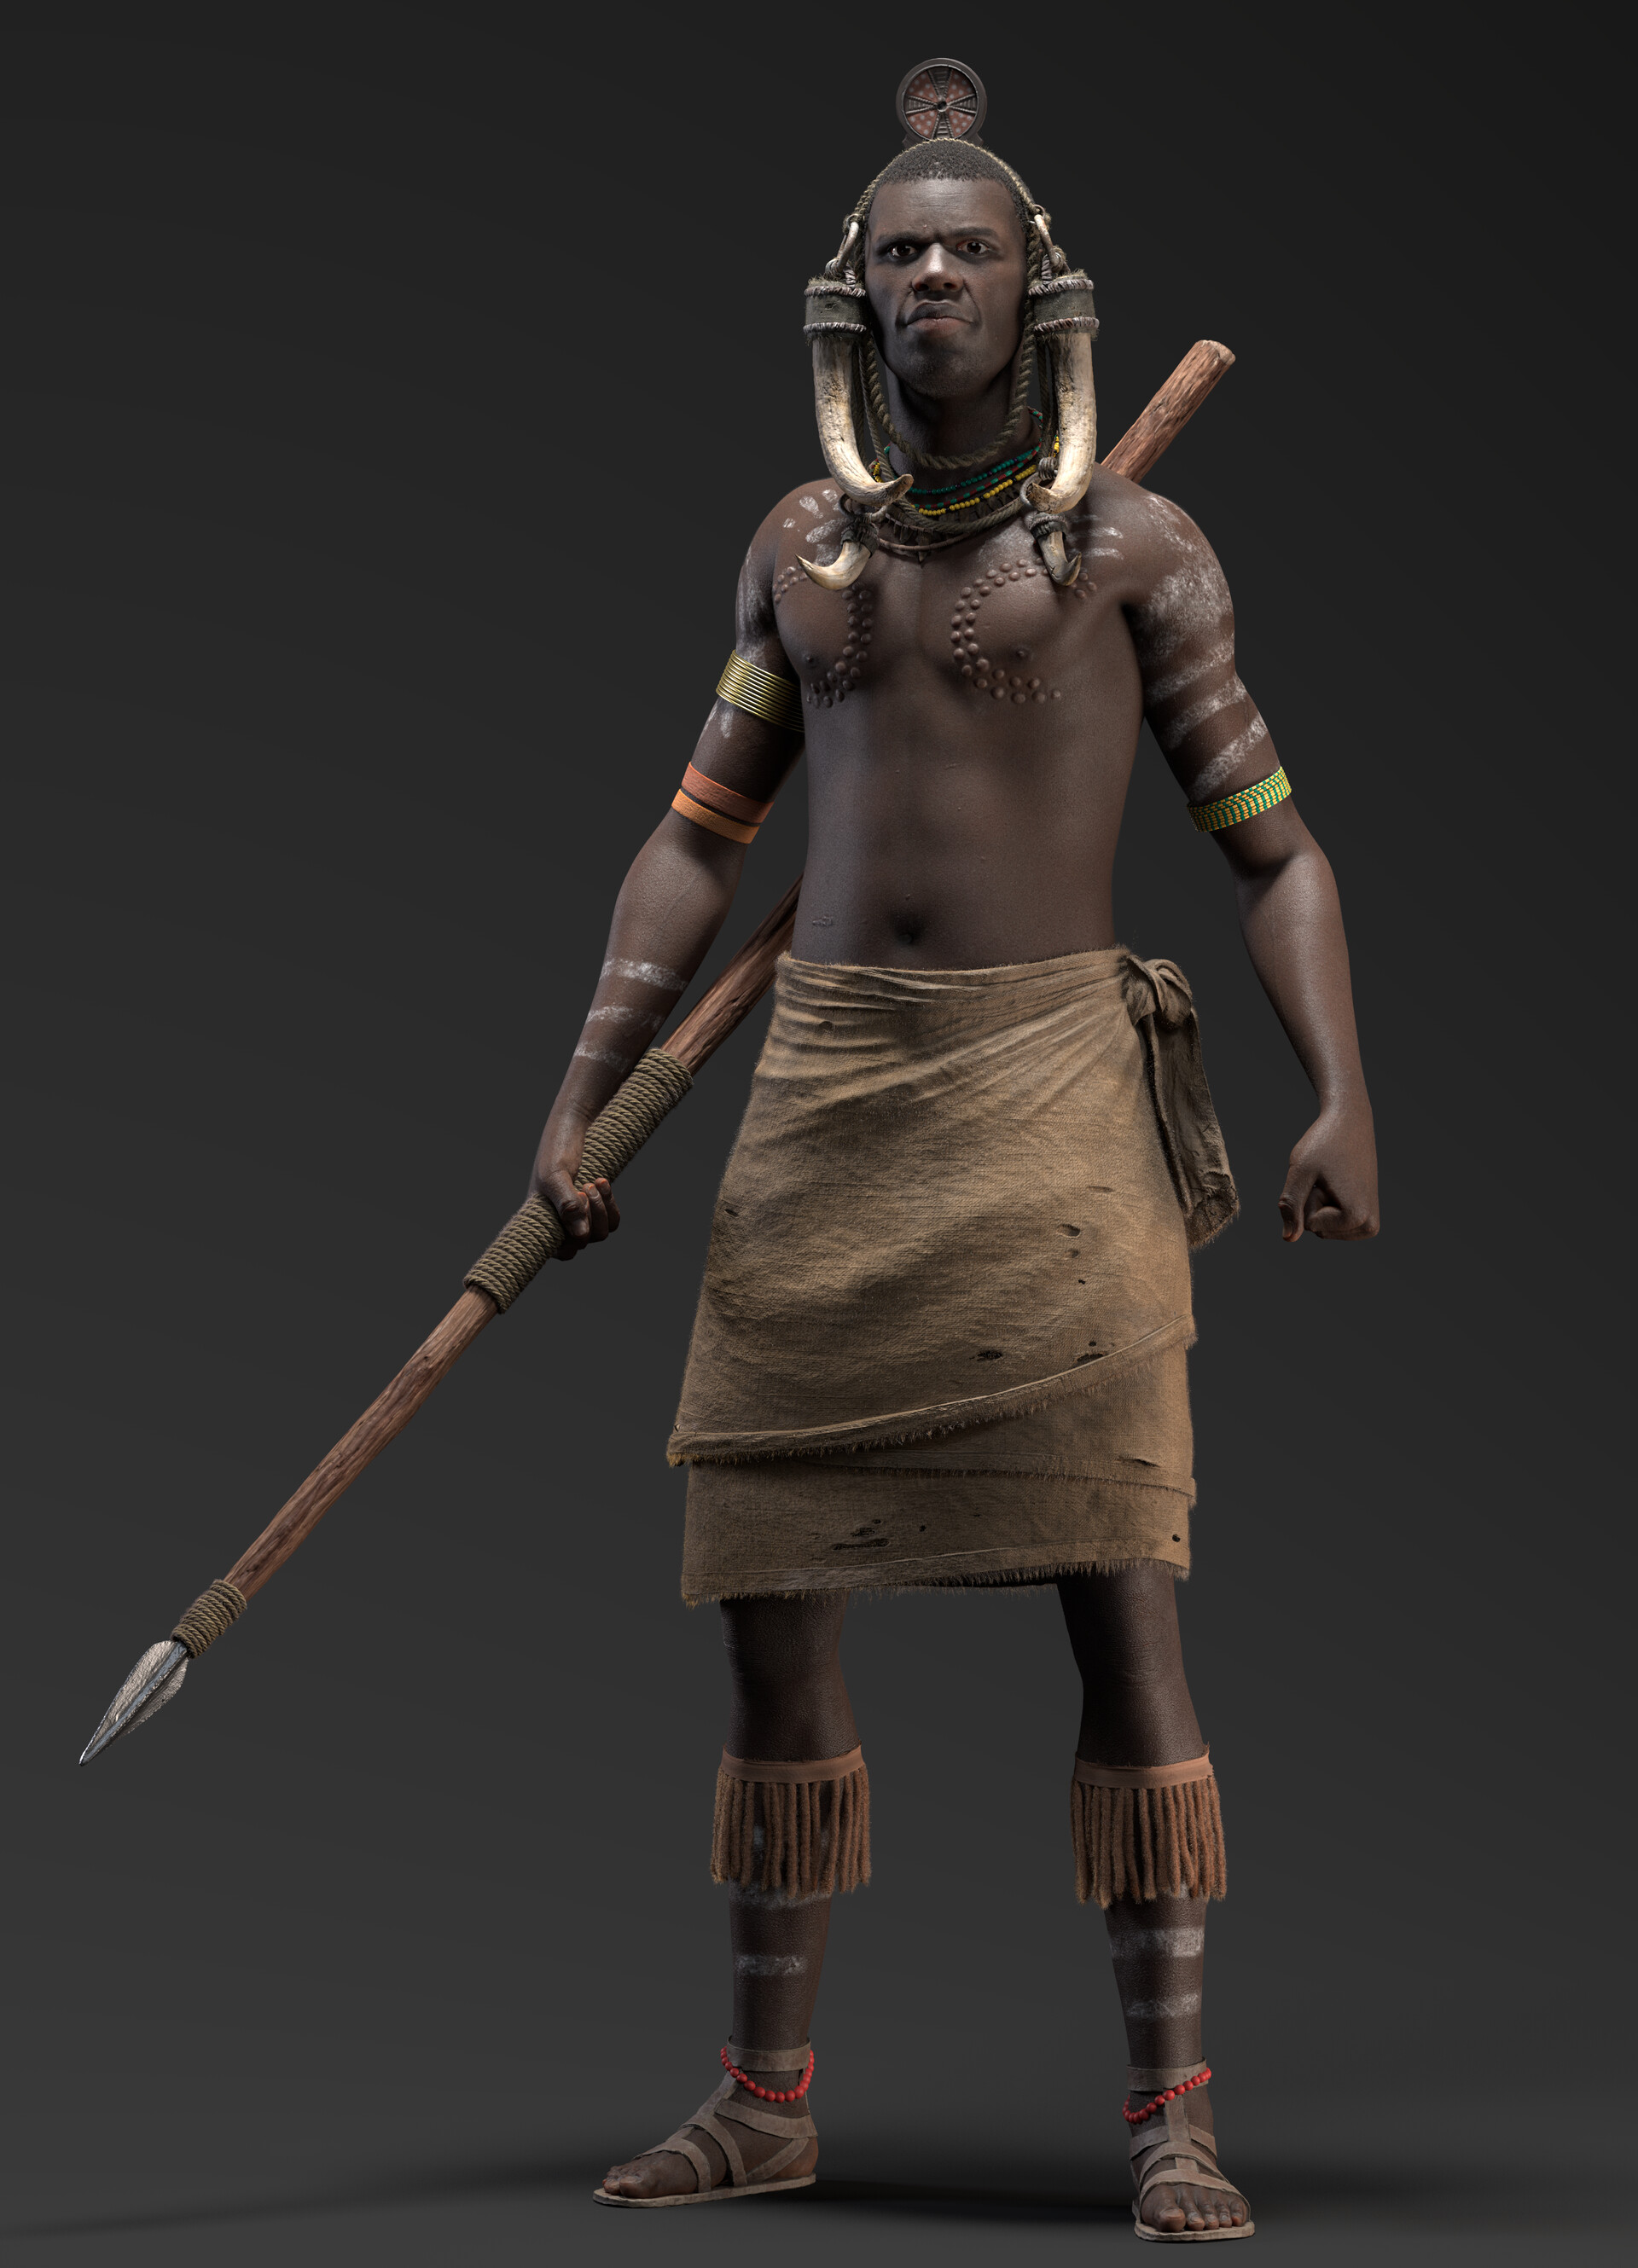 Warrior tribes